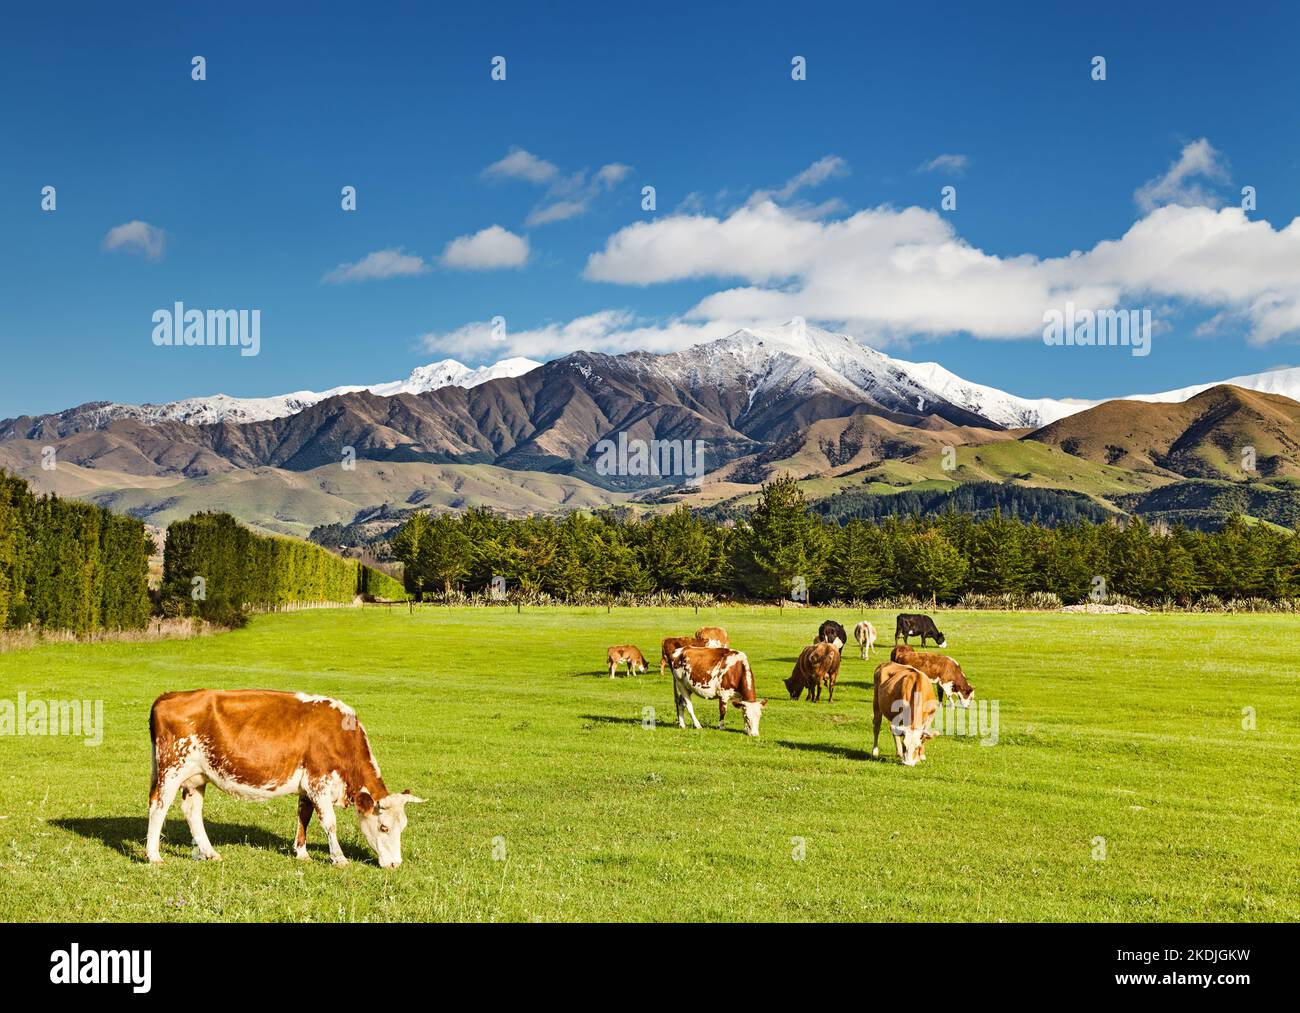 Paysage avec les montagnes enneigées et les vaches de pâturage, la Nouvelle-Zélande Banque D'Images